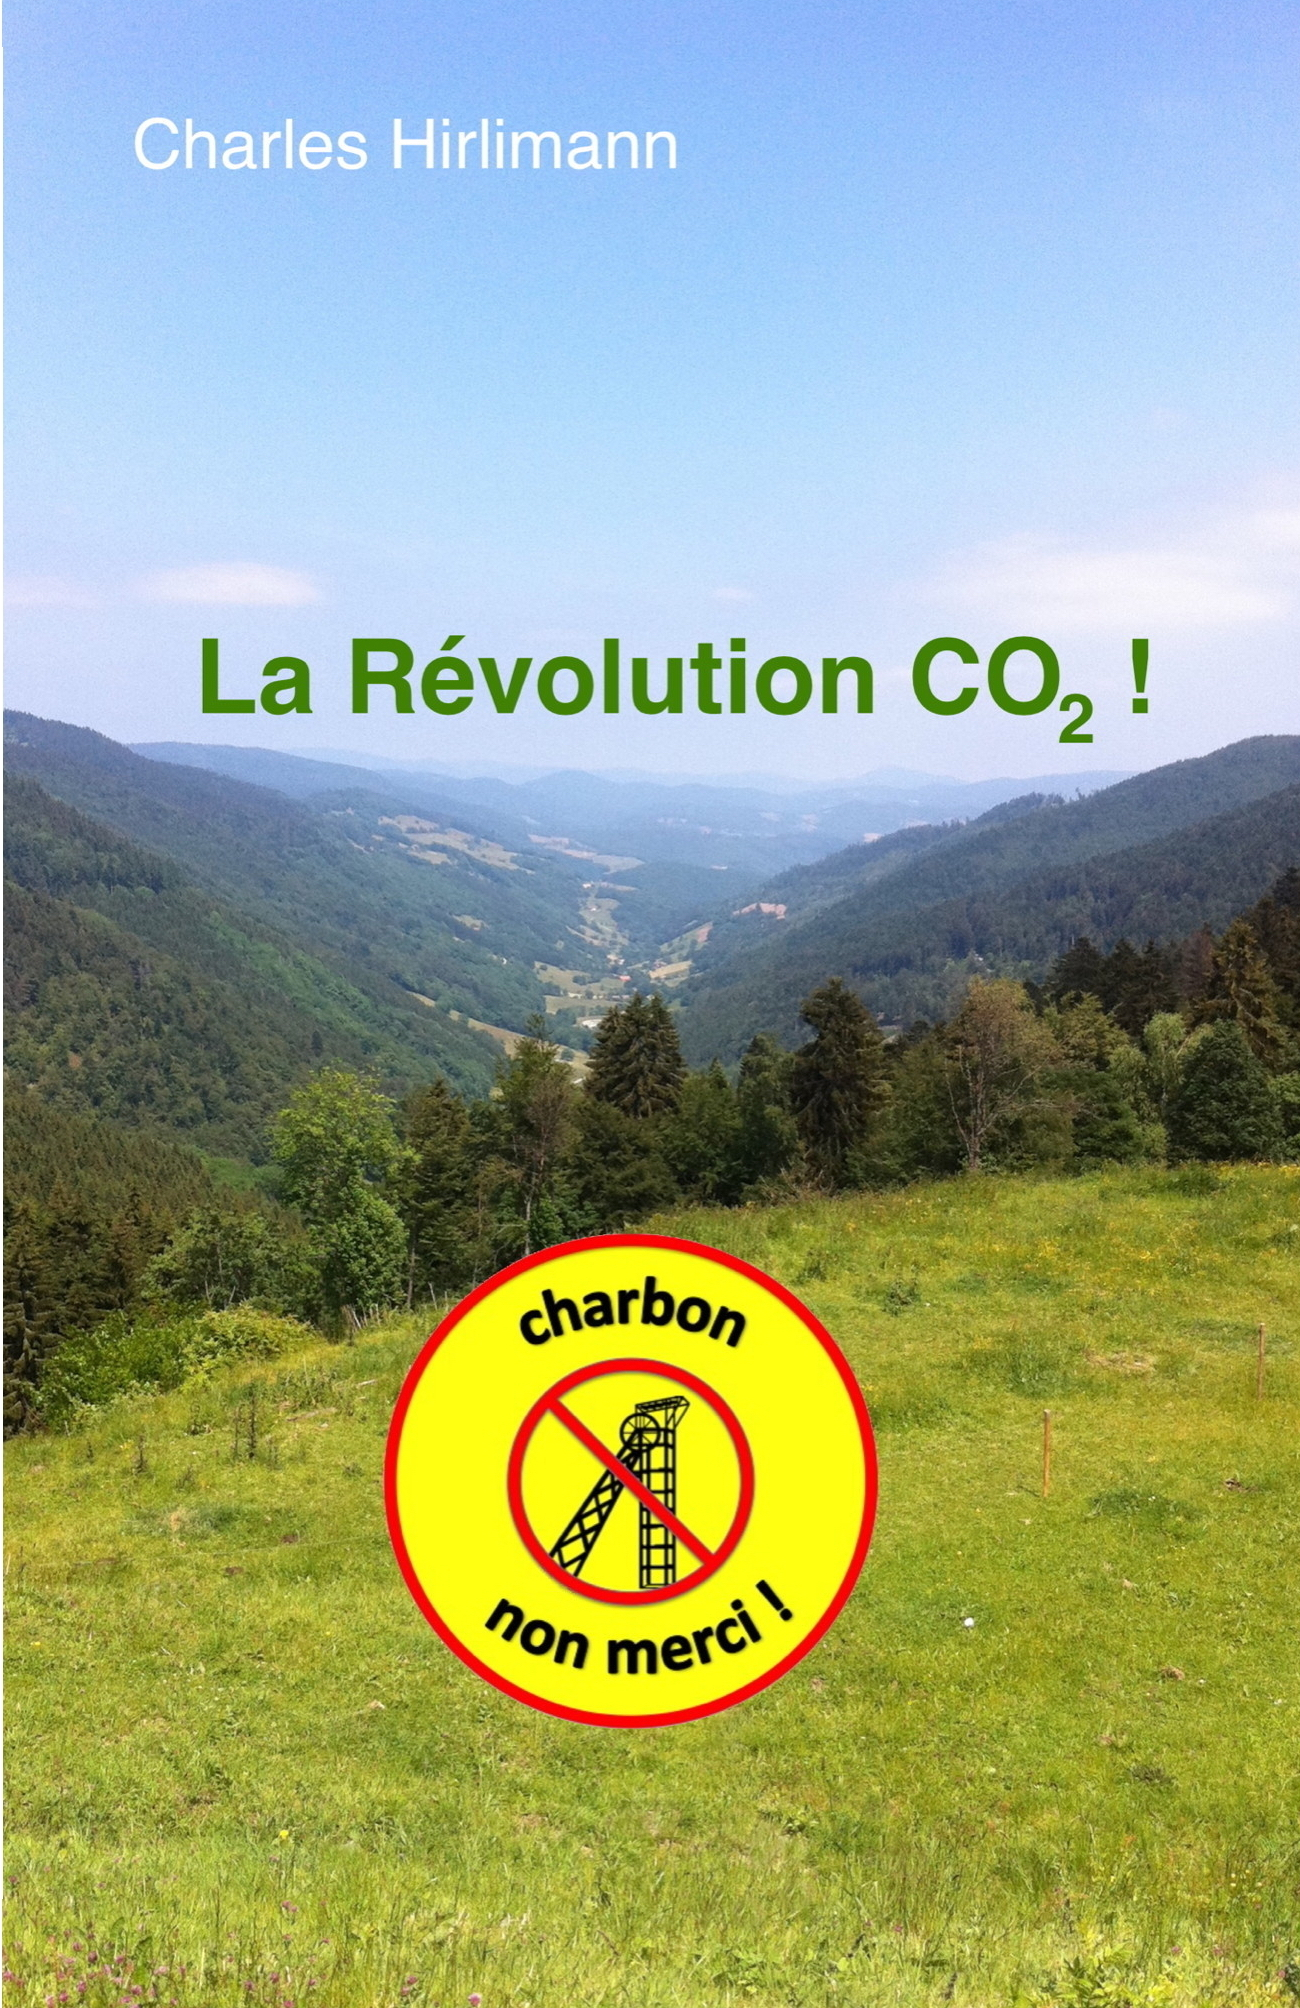 La Révolution CO2 !